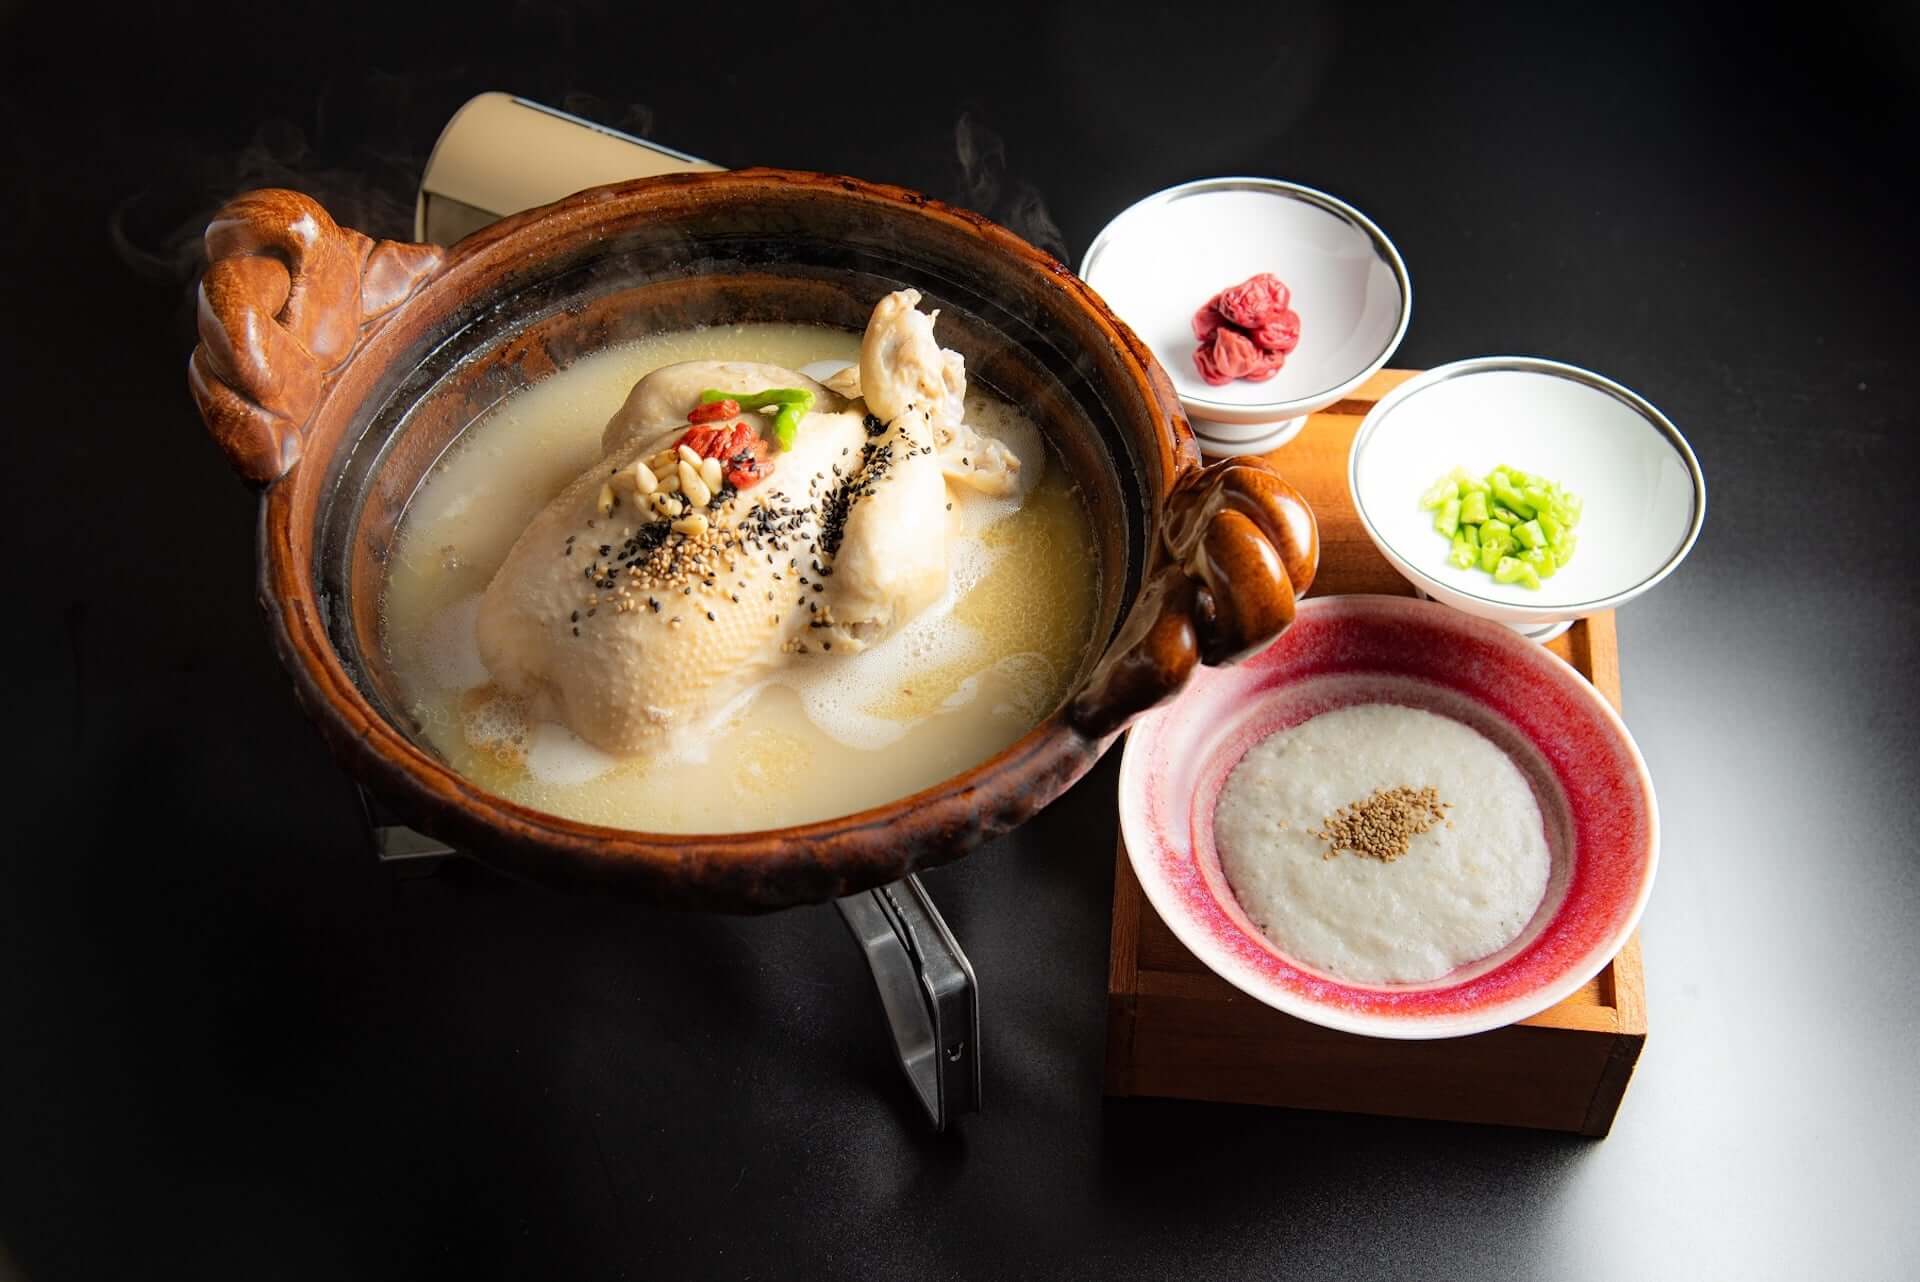 『現代版（ヒョンデ）参鶏湯』を楽しめる韓国料理屋「CLASSIC 参鶏湯」が恵⽐寿に新登場！薄皮蒸し餃子『マンドゥ』などオリジナルメニュー満載 gourmet210311_classic-korea_4-1920x1282